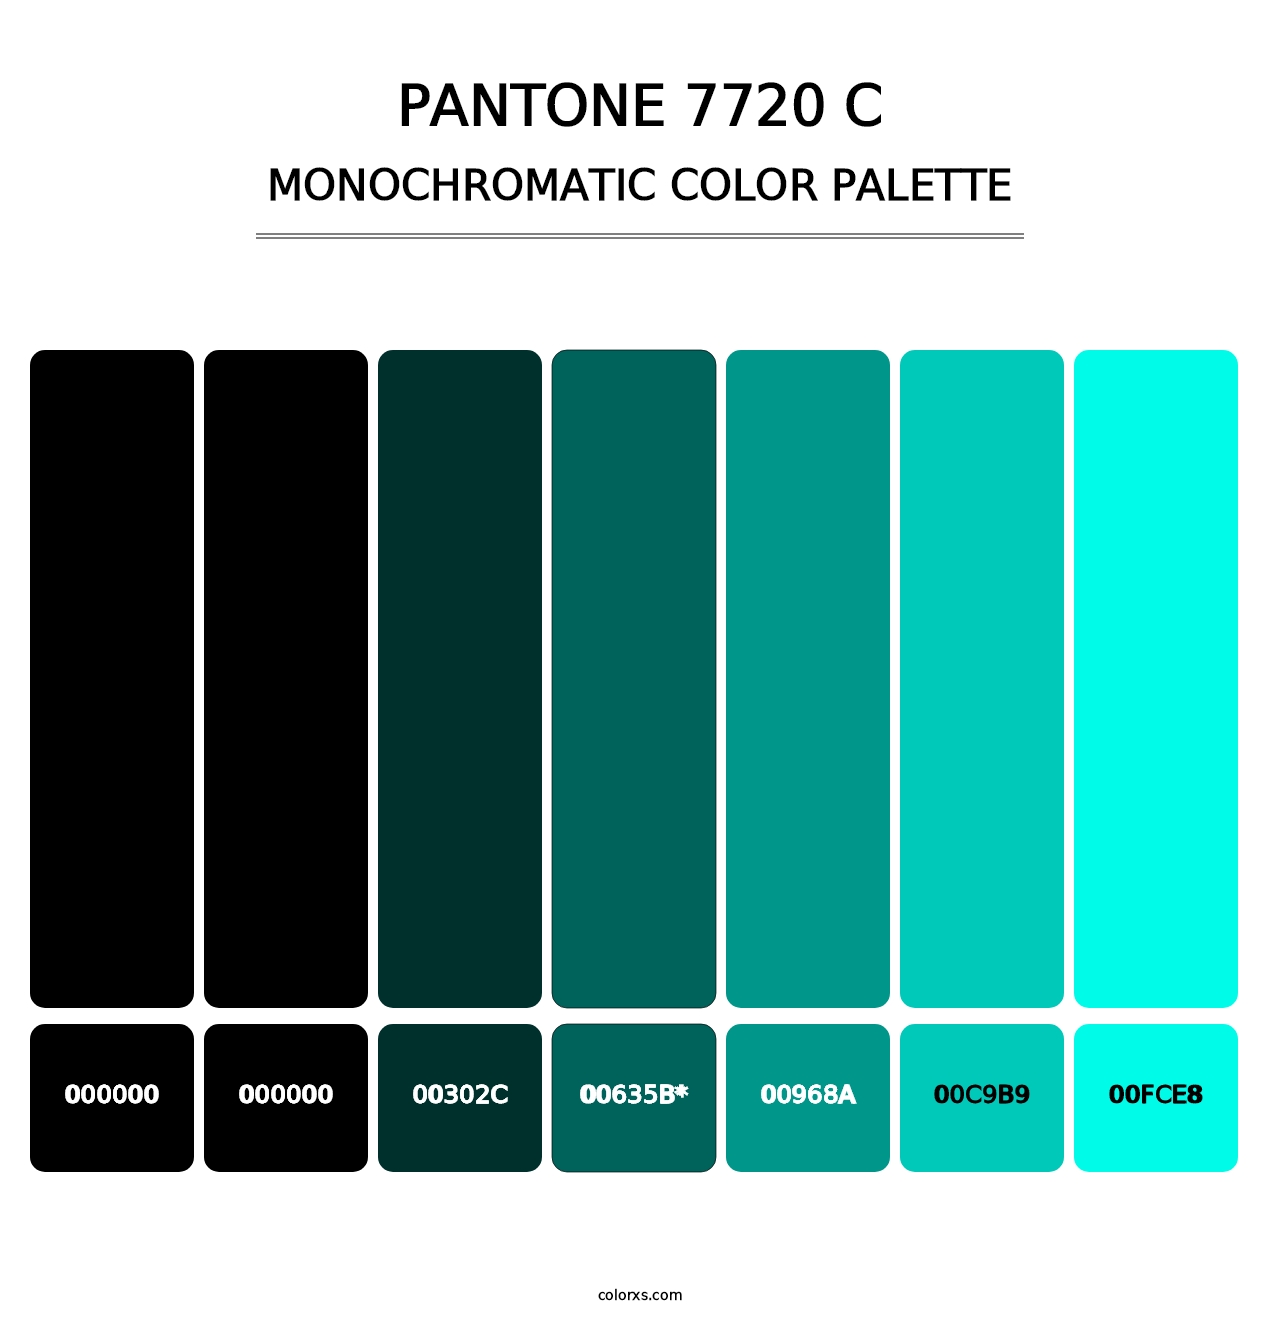 PANTONE 7720 C - Monochromatic Color Palette